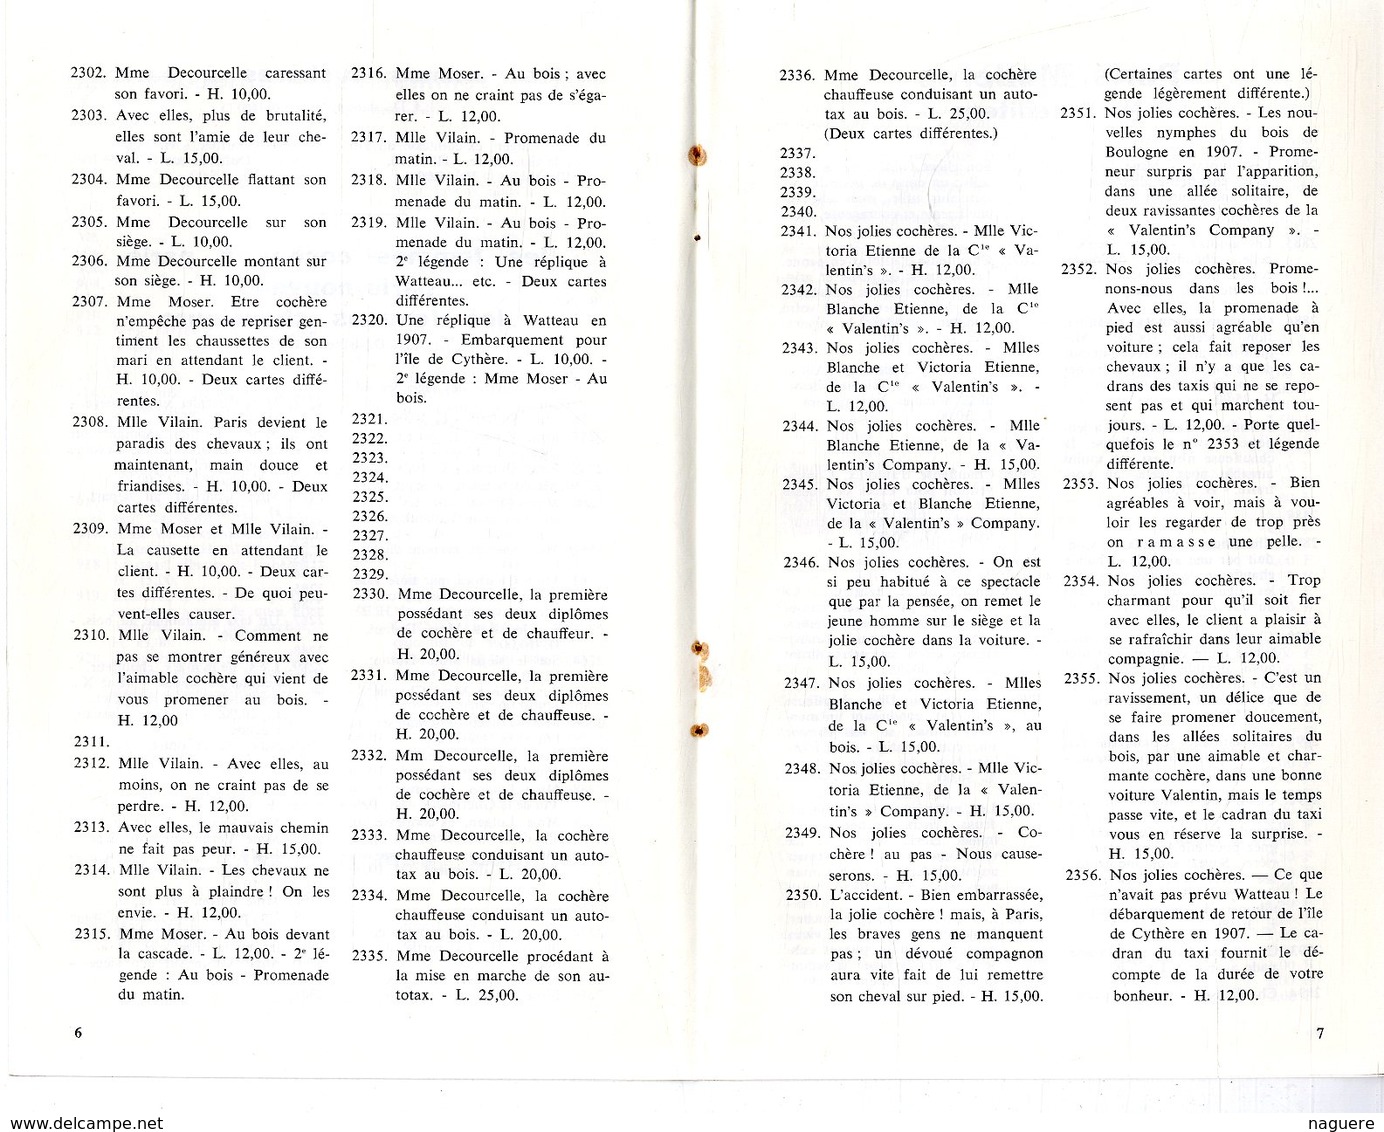 LE CARTOPHILE  JUIN 1972  N° 25  -  16 PAGES   AEROPLANE ALLEMAND LES FEMMES COCHER  CAMPS DE PRISONNIERS DE GUE  Etc .. - Français